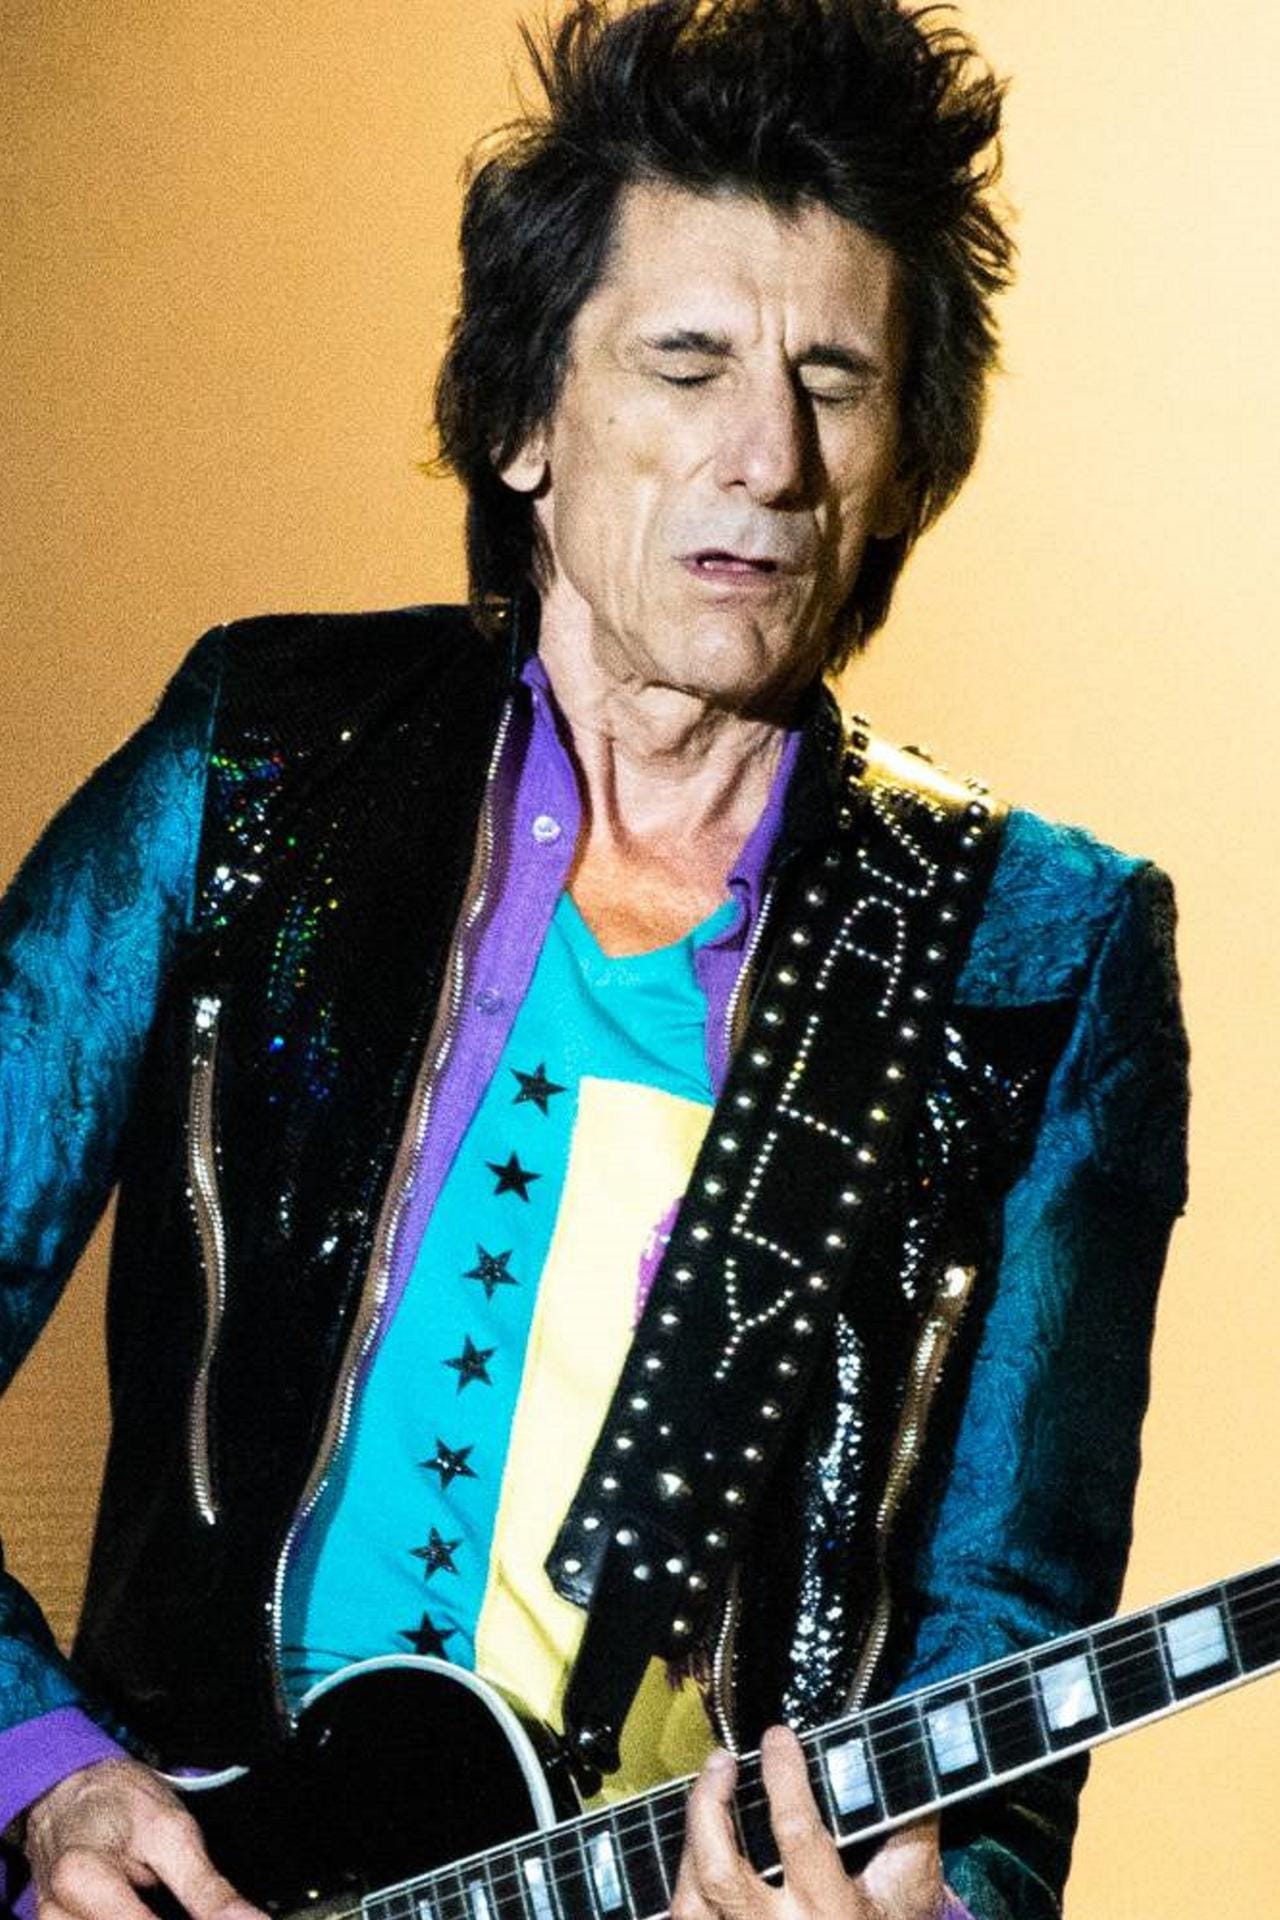 Ron Wood: Bei einer Routineuntersuchung vor der Tournee im Mai 2017 wurde bei dem Musiker Lungenkrebs diagnostiziert. Dem Rolling-Stones-Gitarristen wurde daraufhin ein Teil der Lunge entnommen. "Ich hatte verdammtes Glück", sagte der Musiker der "Mail on Sunday".